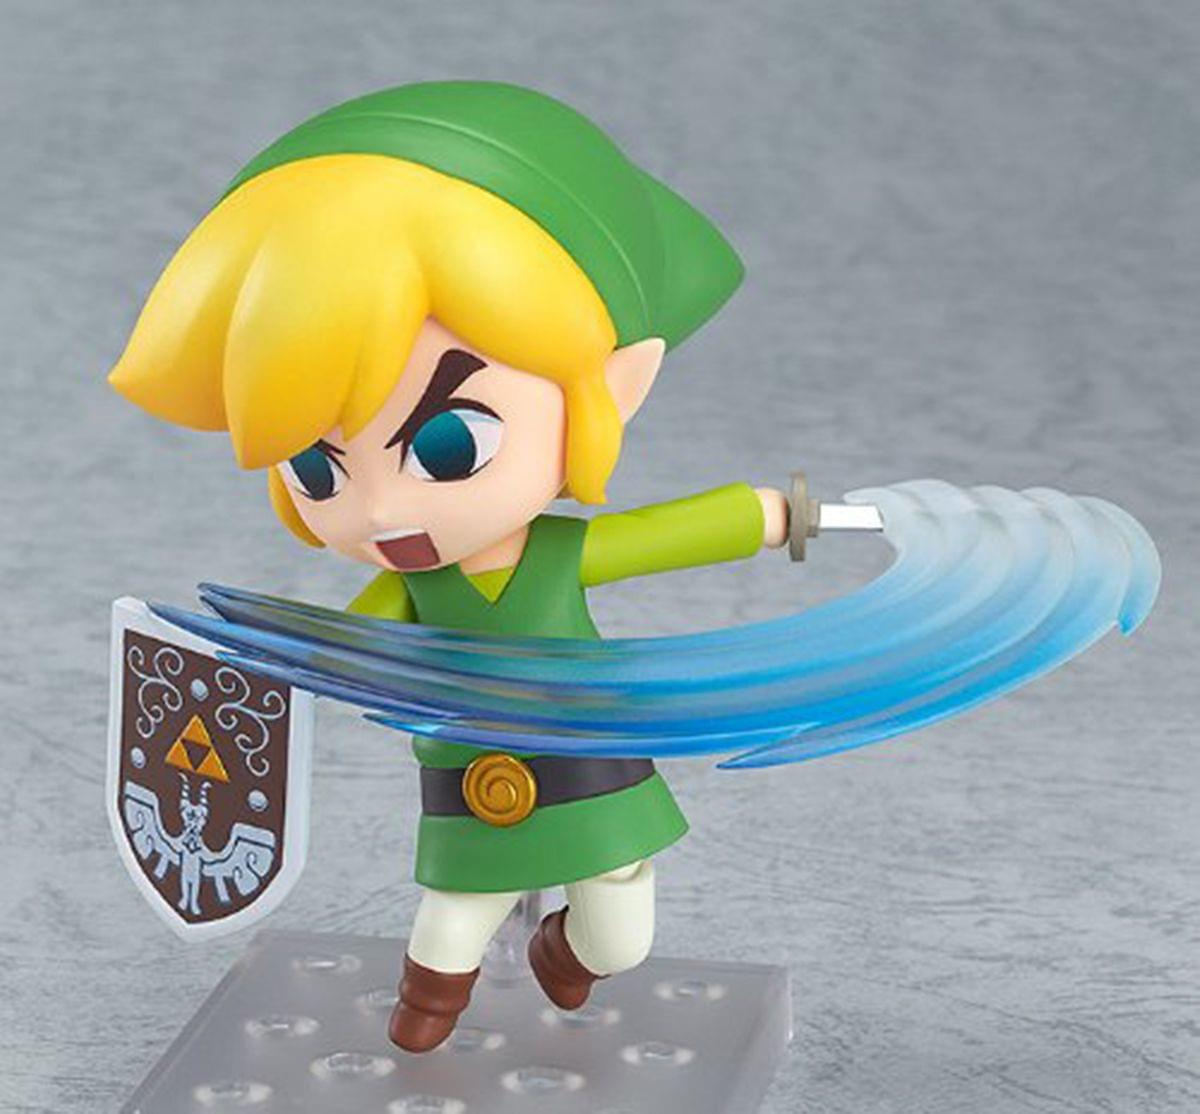 Toy Opening & Review: World of Nintendo Legend of Zelda figures: Wind waker  & Skyward Sword 